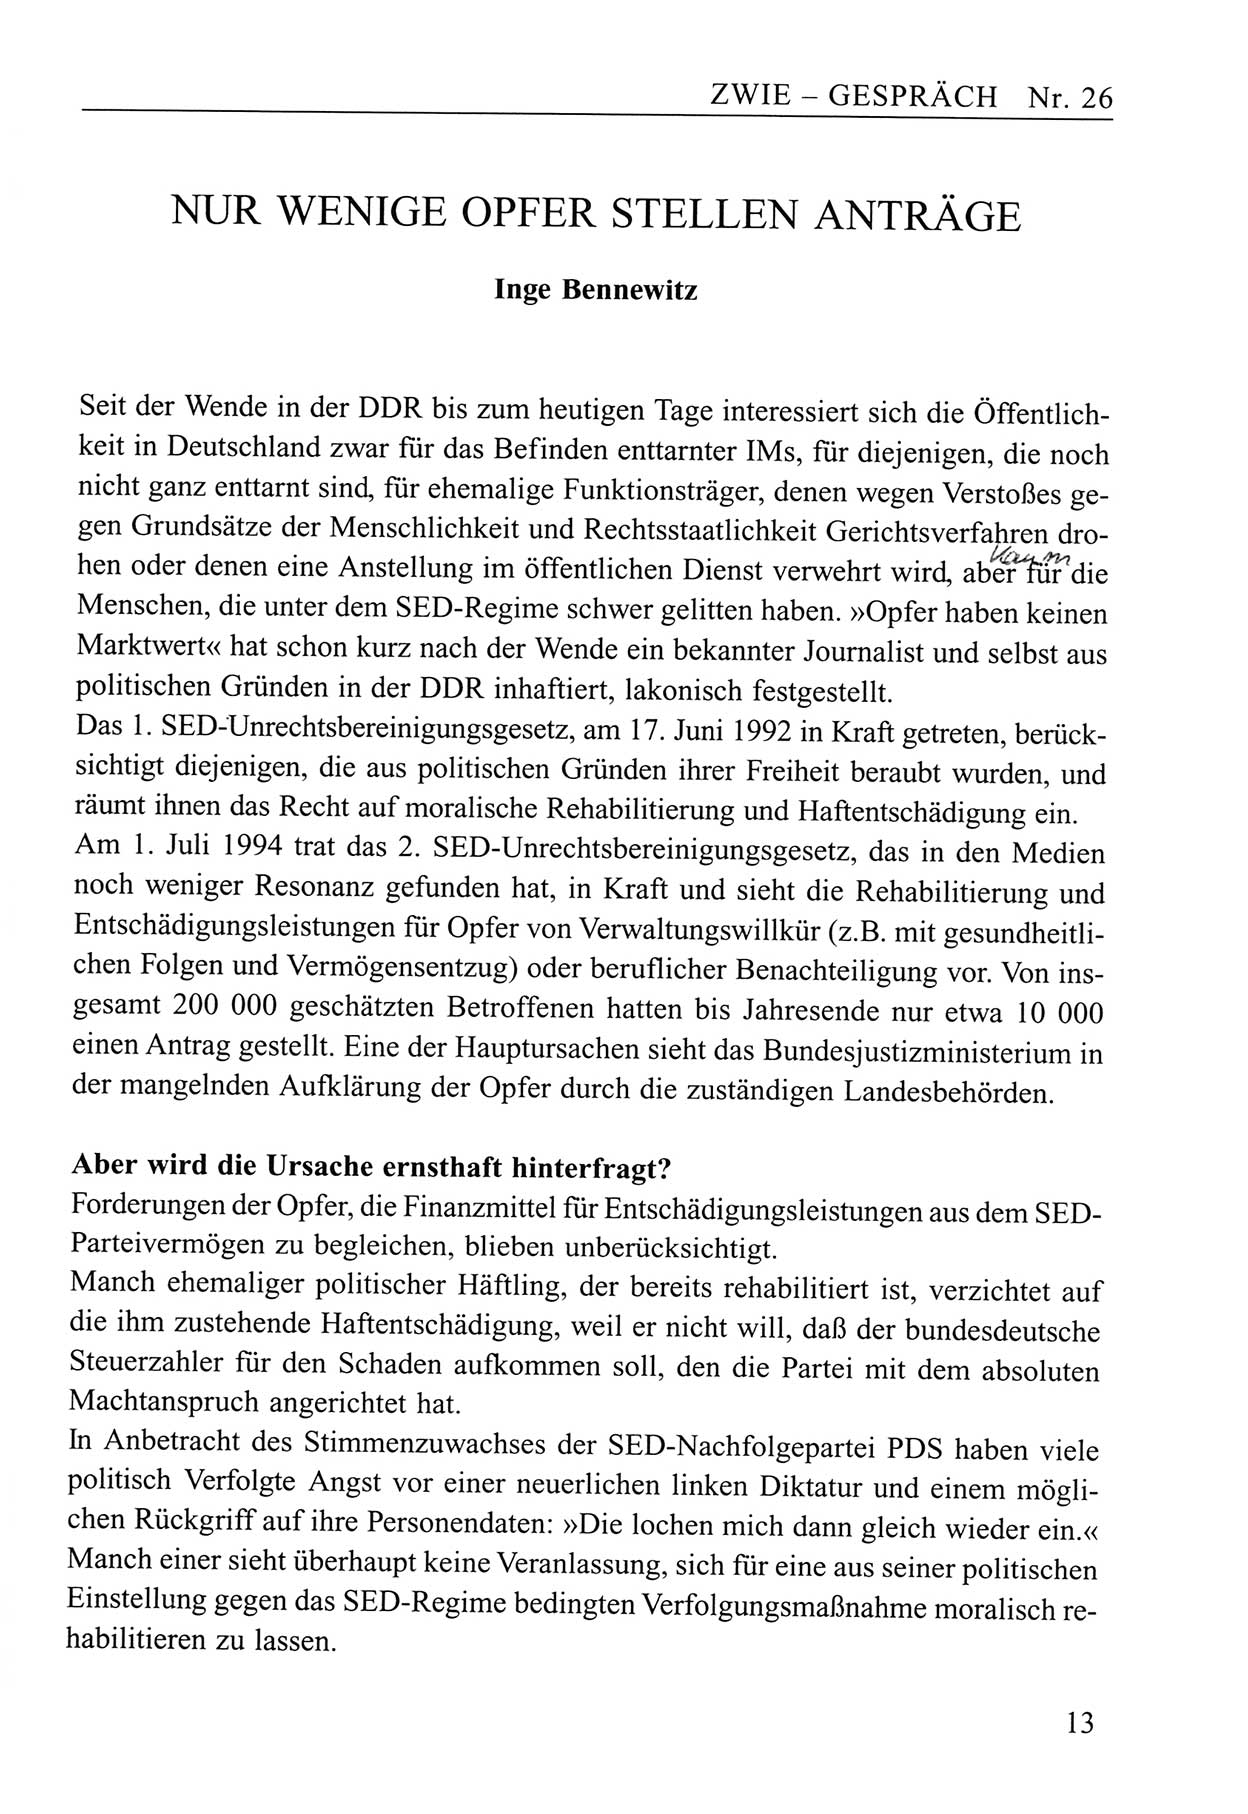 Zwie-GesprÃ¤ch, BeitrÃ¤ge zum Umgang mit der Staatssicherheits-Vergangenheit [Deutsche Demokratische Republik (DDR)], Ausgabe Nr. 26, Berlin 1995, Seite 13 (Zwie-Gespr. Ausg. 26 1995, S. 13)